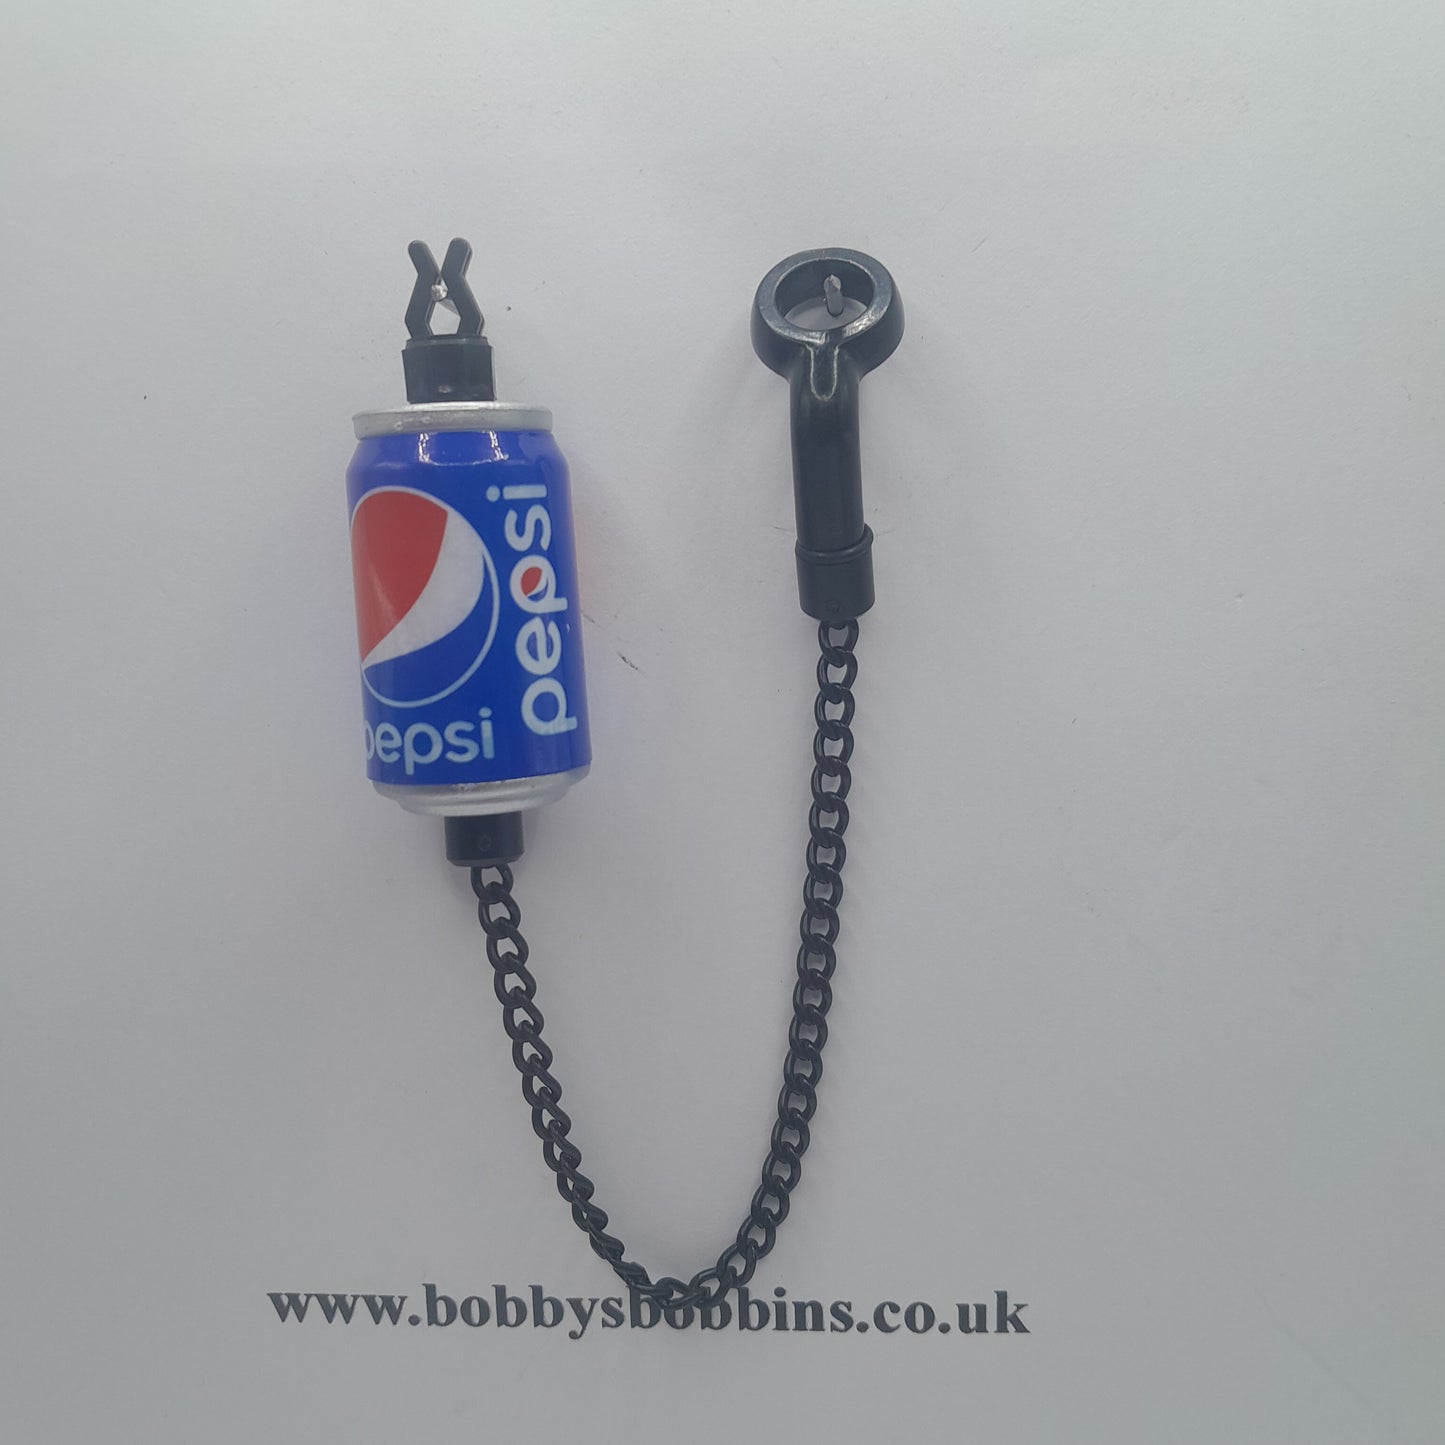 Beer Lager / Fizzy / Prime Energy Drink Can Budweiser Carlsberg Heineken Coke Pepsi Bobbins